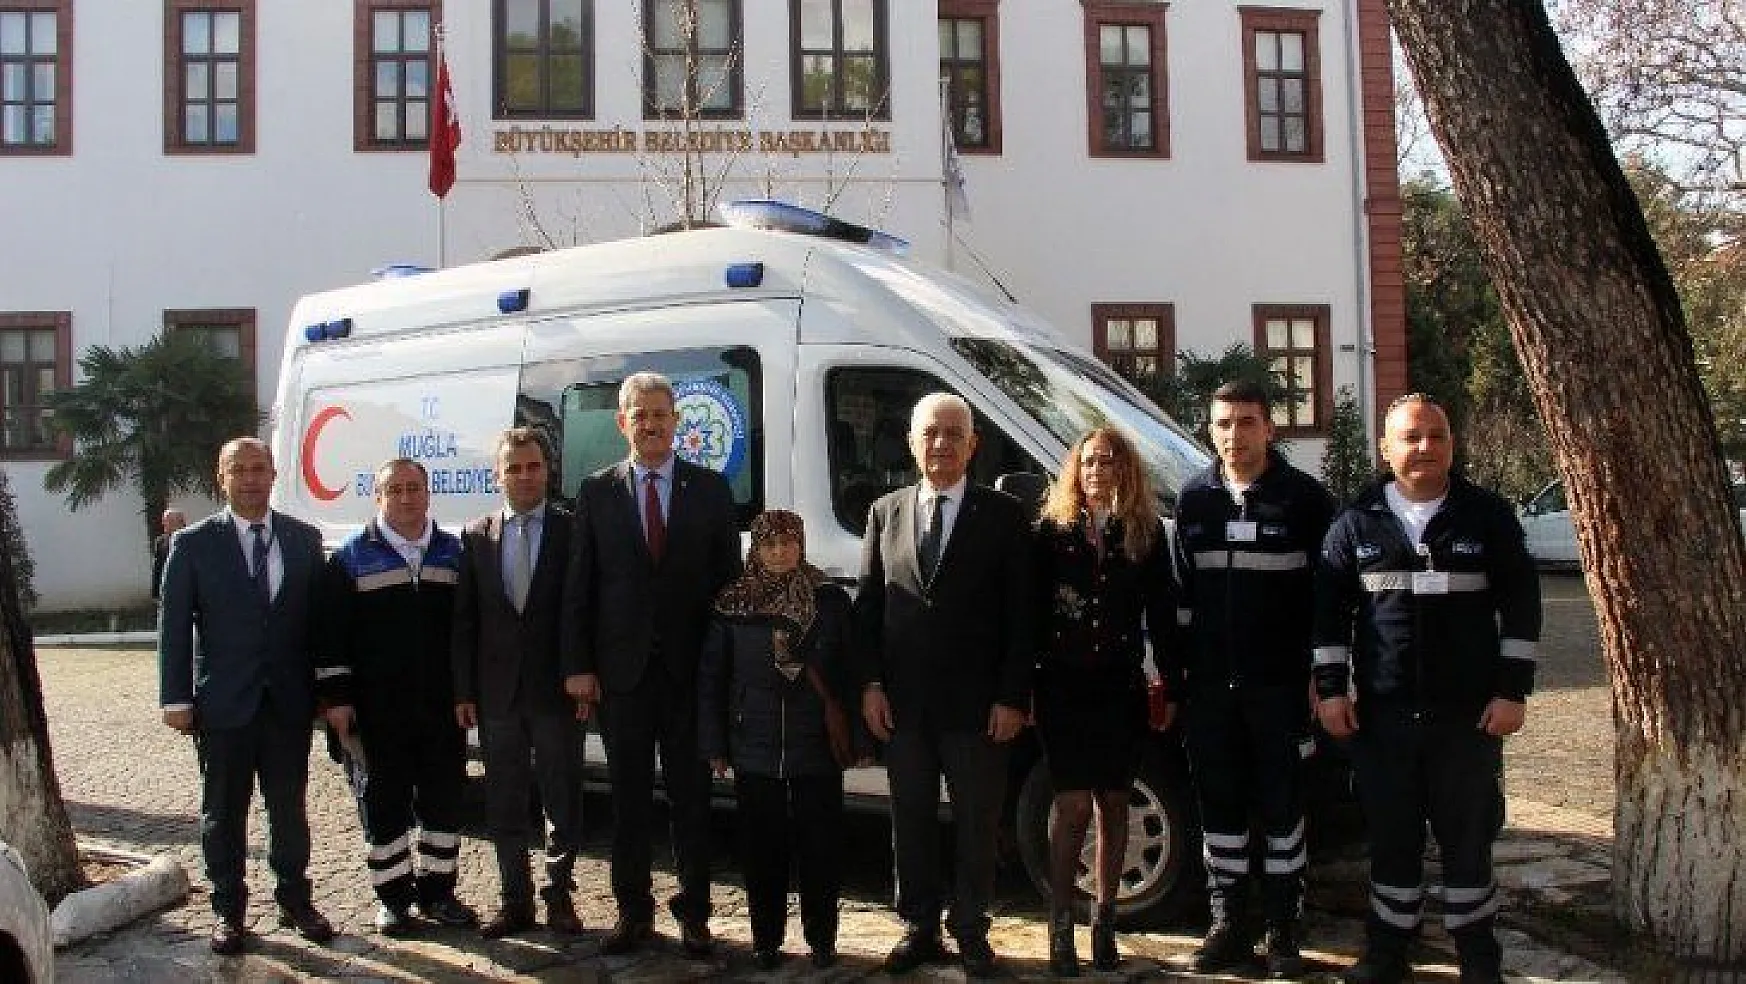 Hizmetten memnun kalan vatandaş ambulans bağışladı